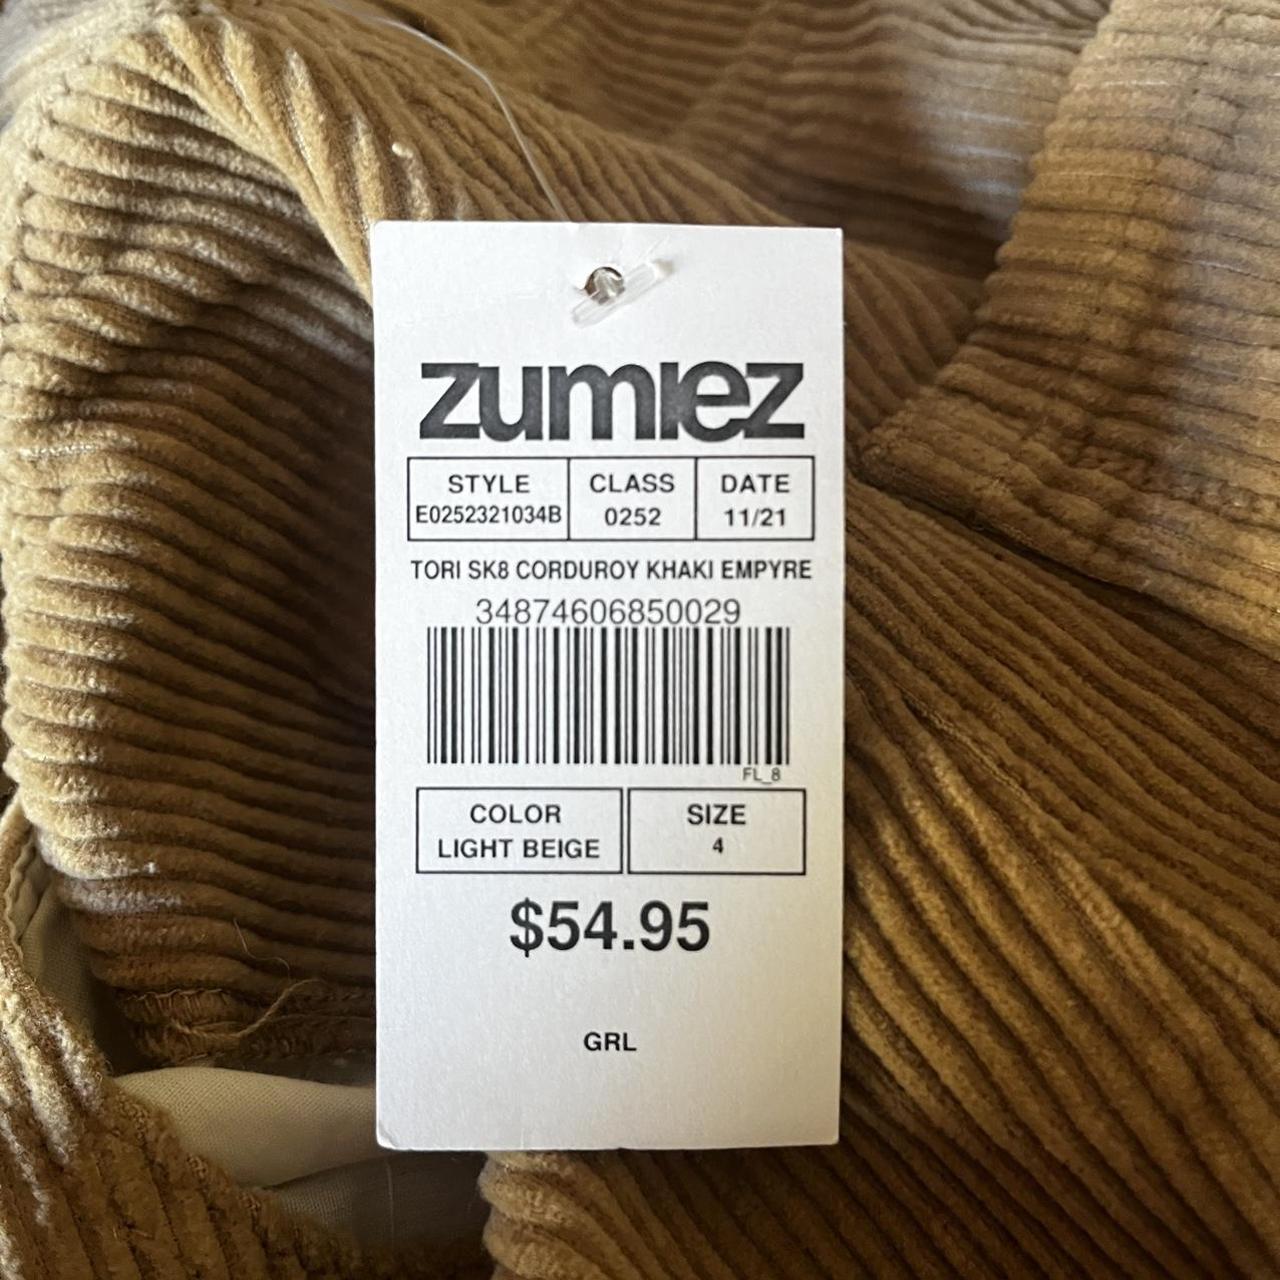 Zumiez Women's Tan and Cream Trousers (4)